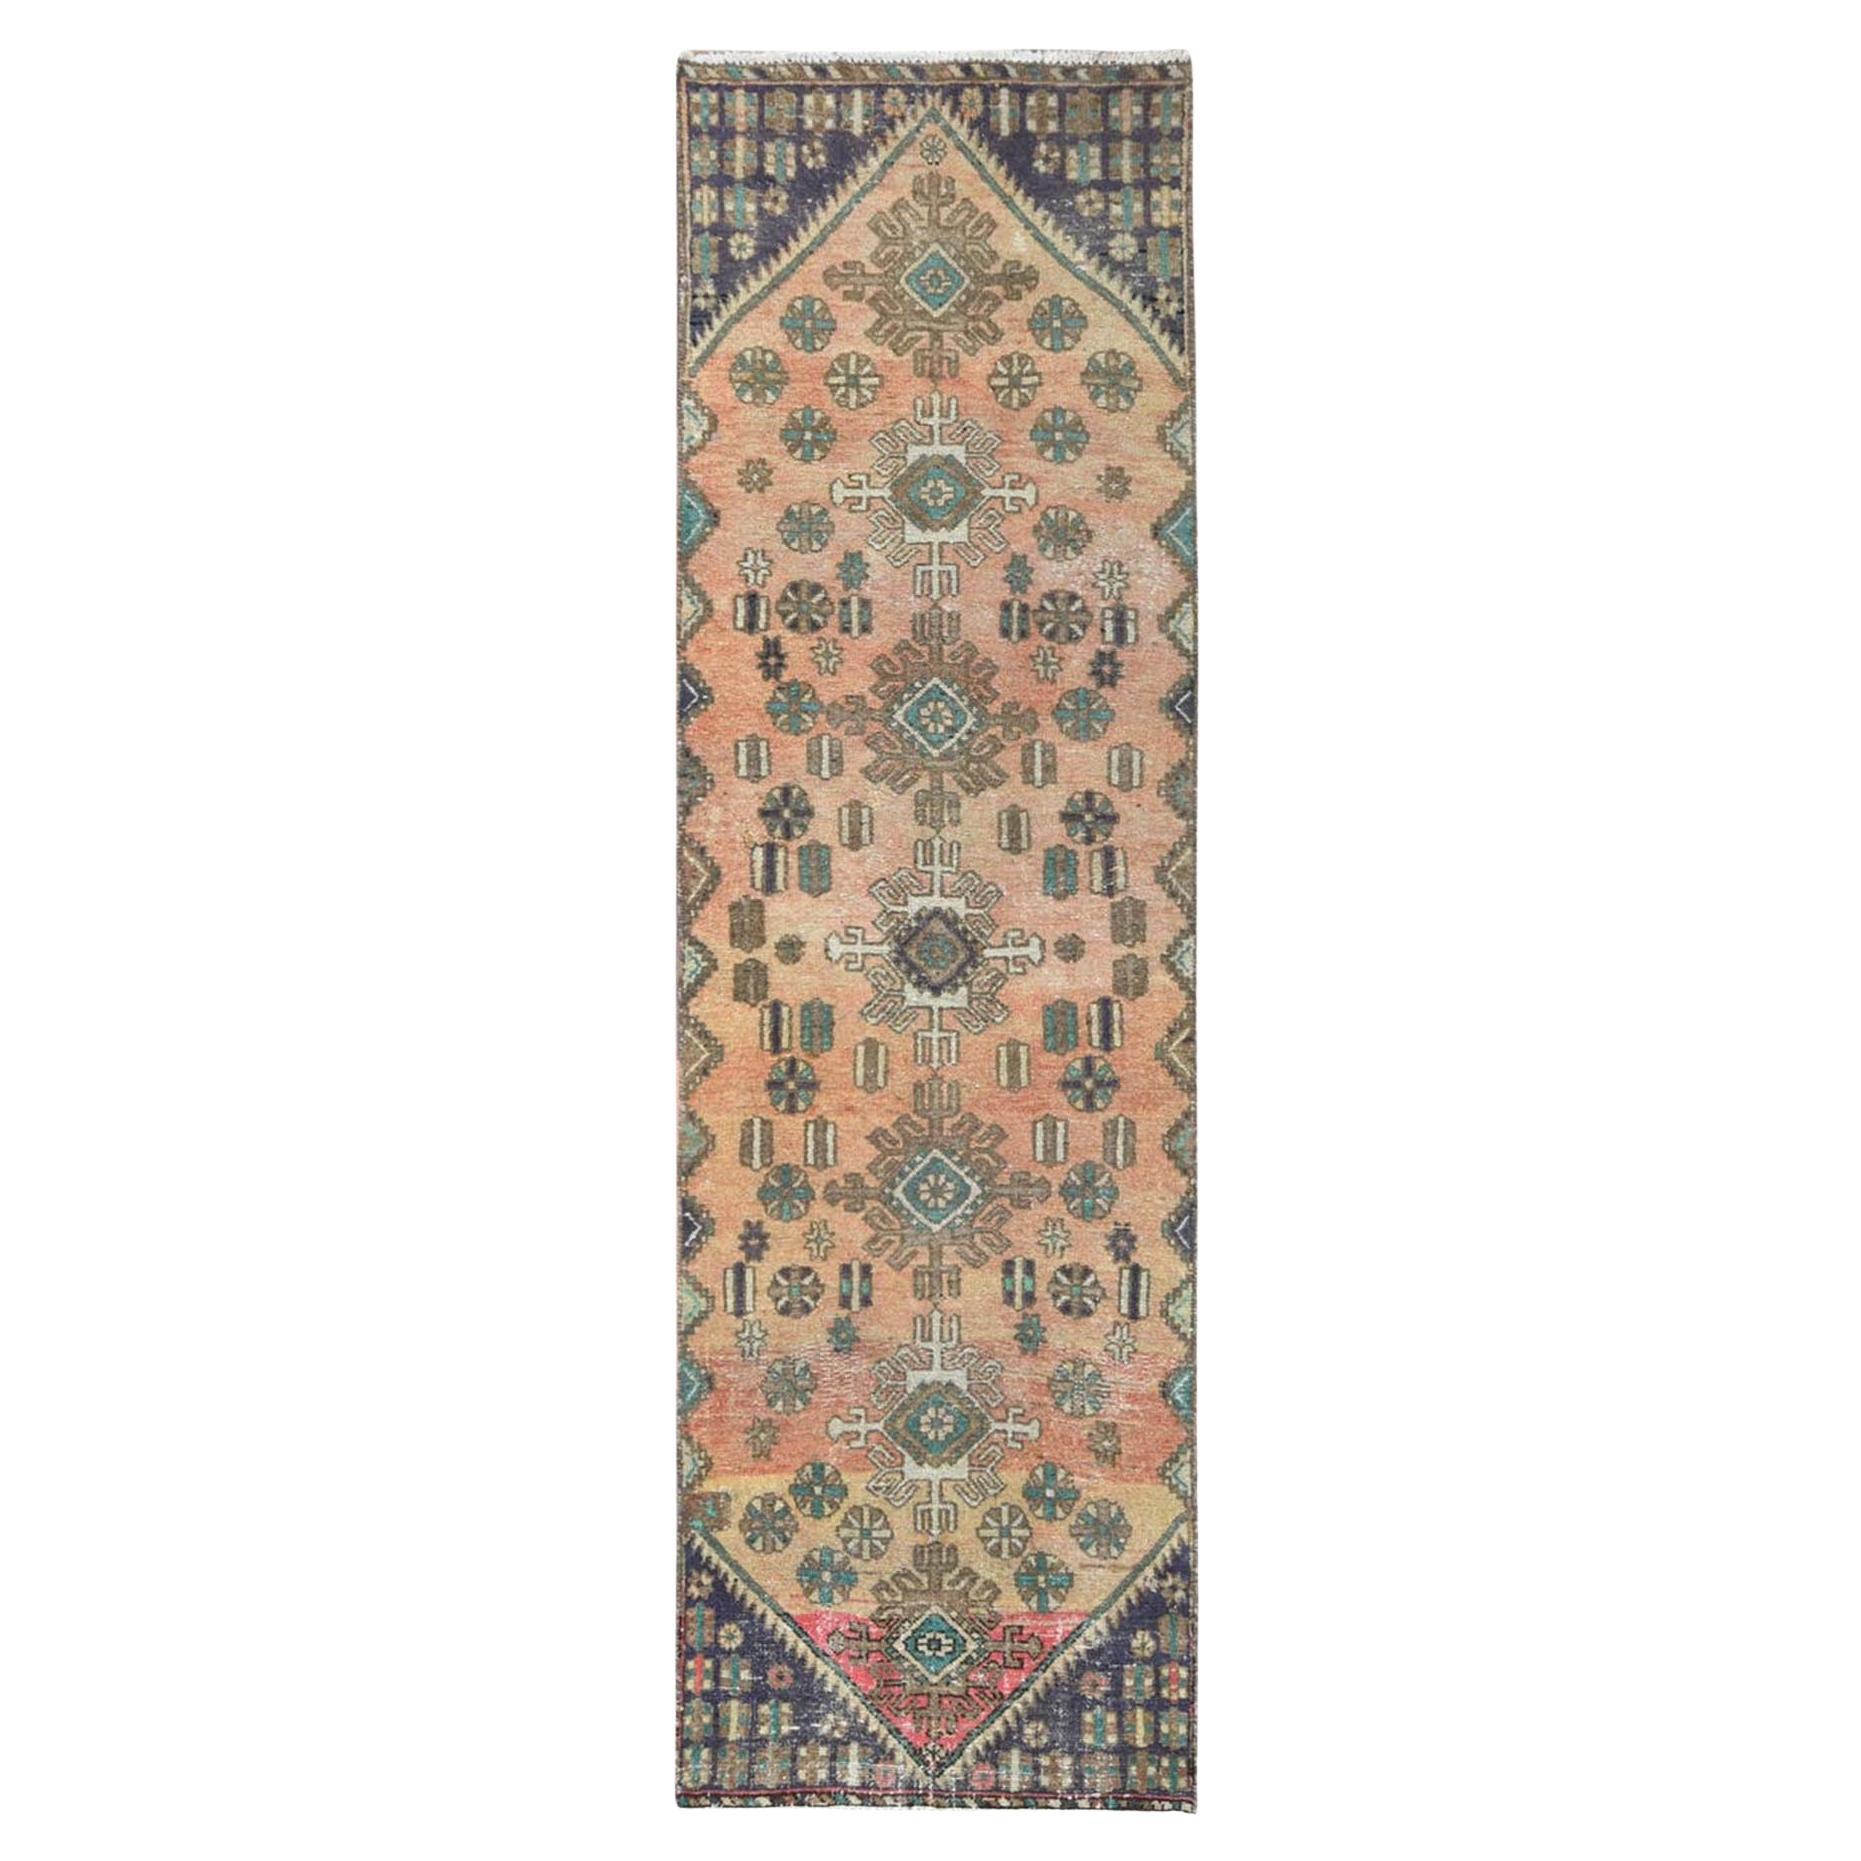 Sunsetfarbener, handgeknüpfter persischer Bakhtiar-Teppich aus Wolle im Used-Stil